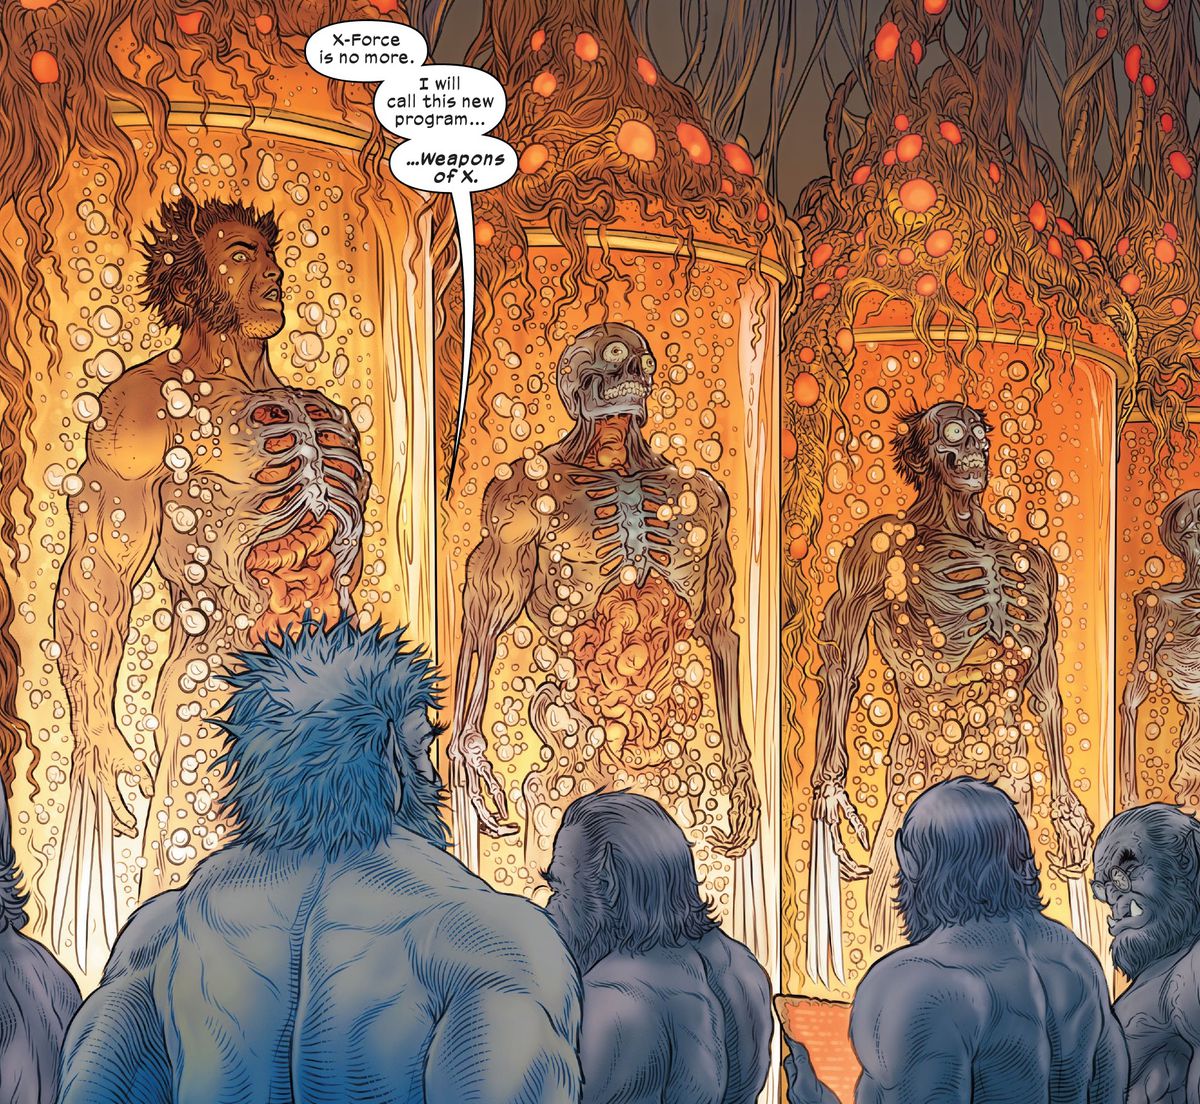 "X-Force ya no existe", dice Beast a otros cuatro clones de Beast que están supervisando varias tinas de clones de Wolverine en crecimiento. “Llamaré a este nuevo programa... Armas de X”, en Wolverine #31 (2023).